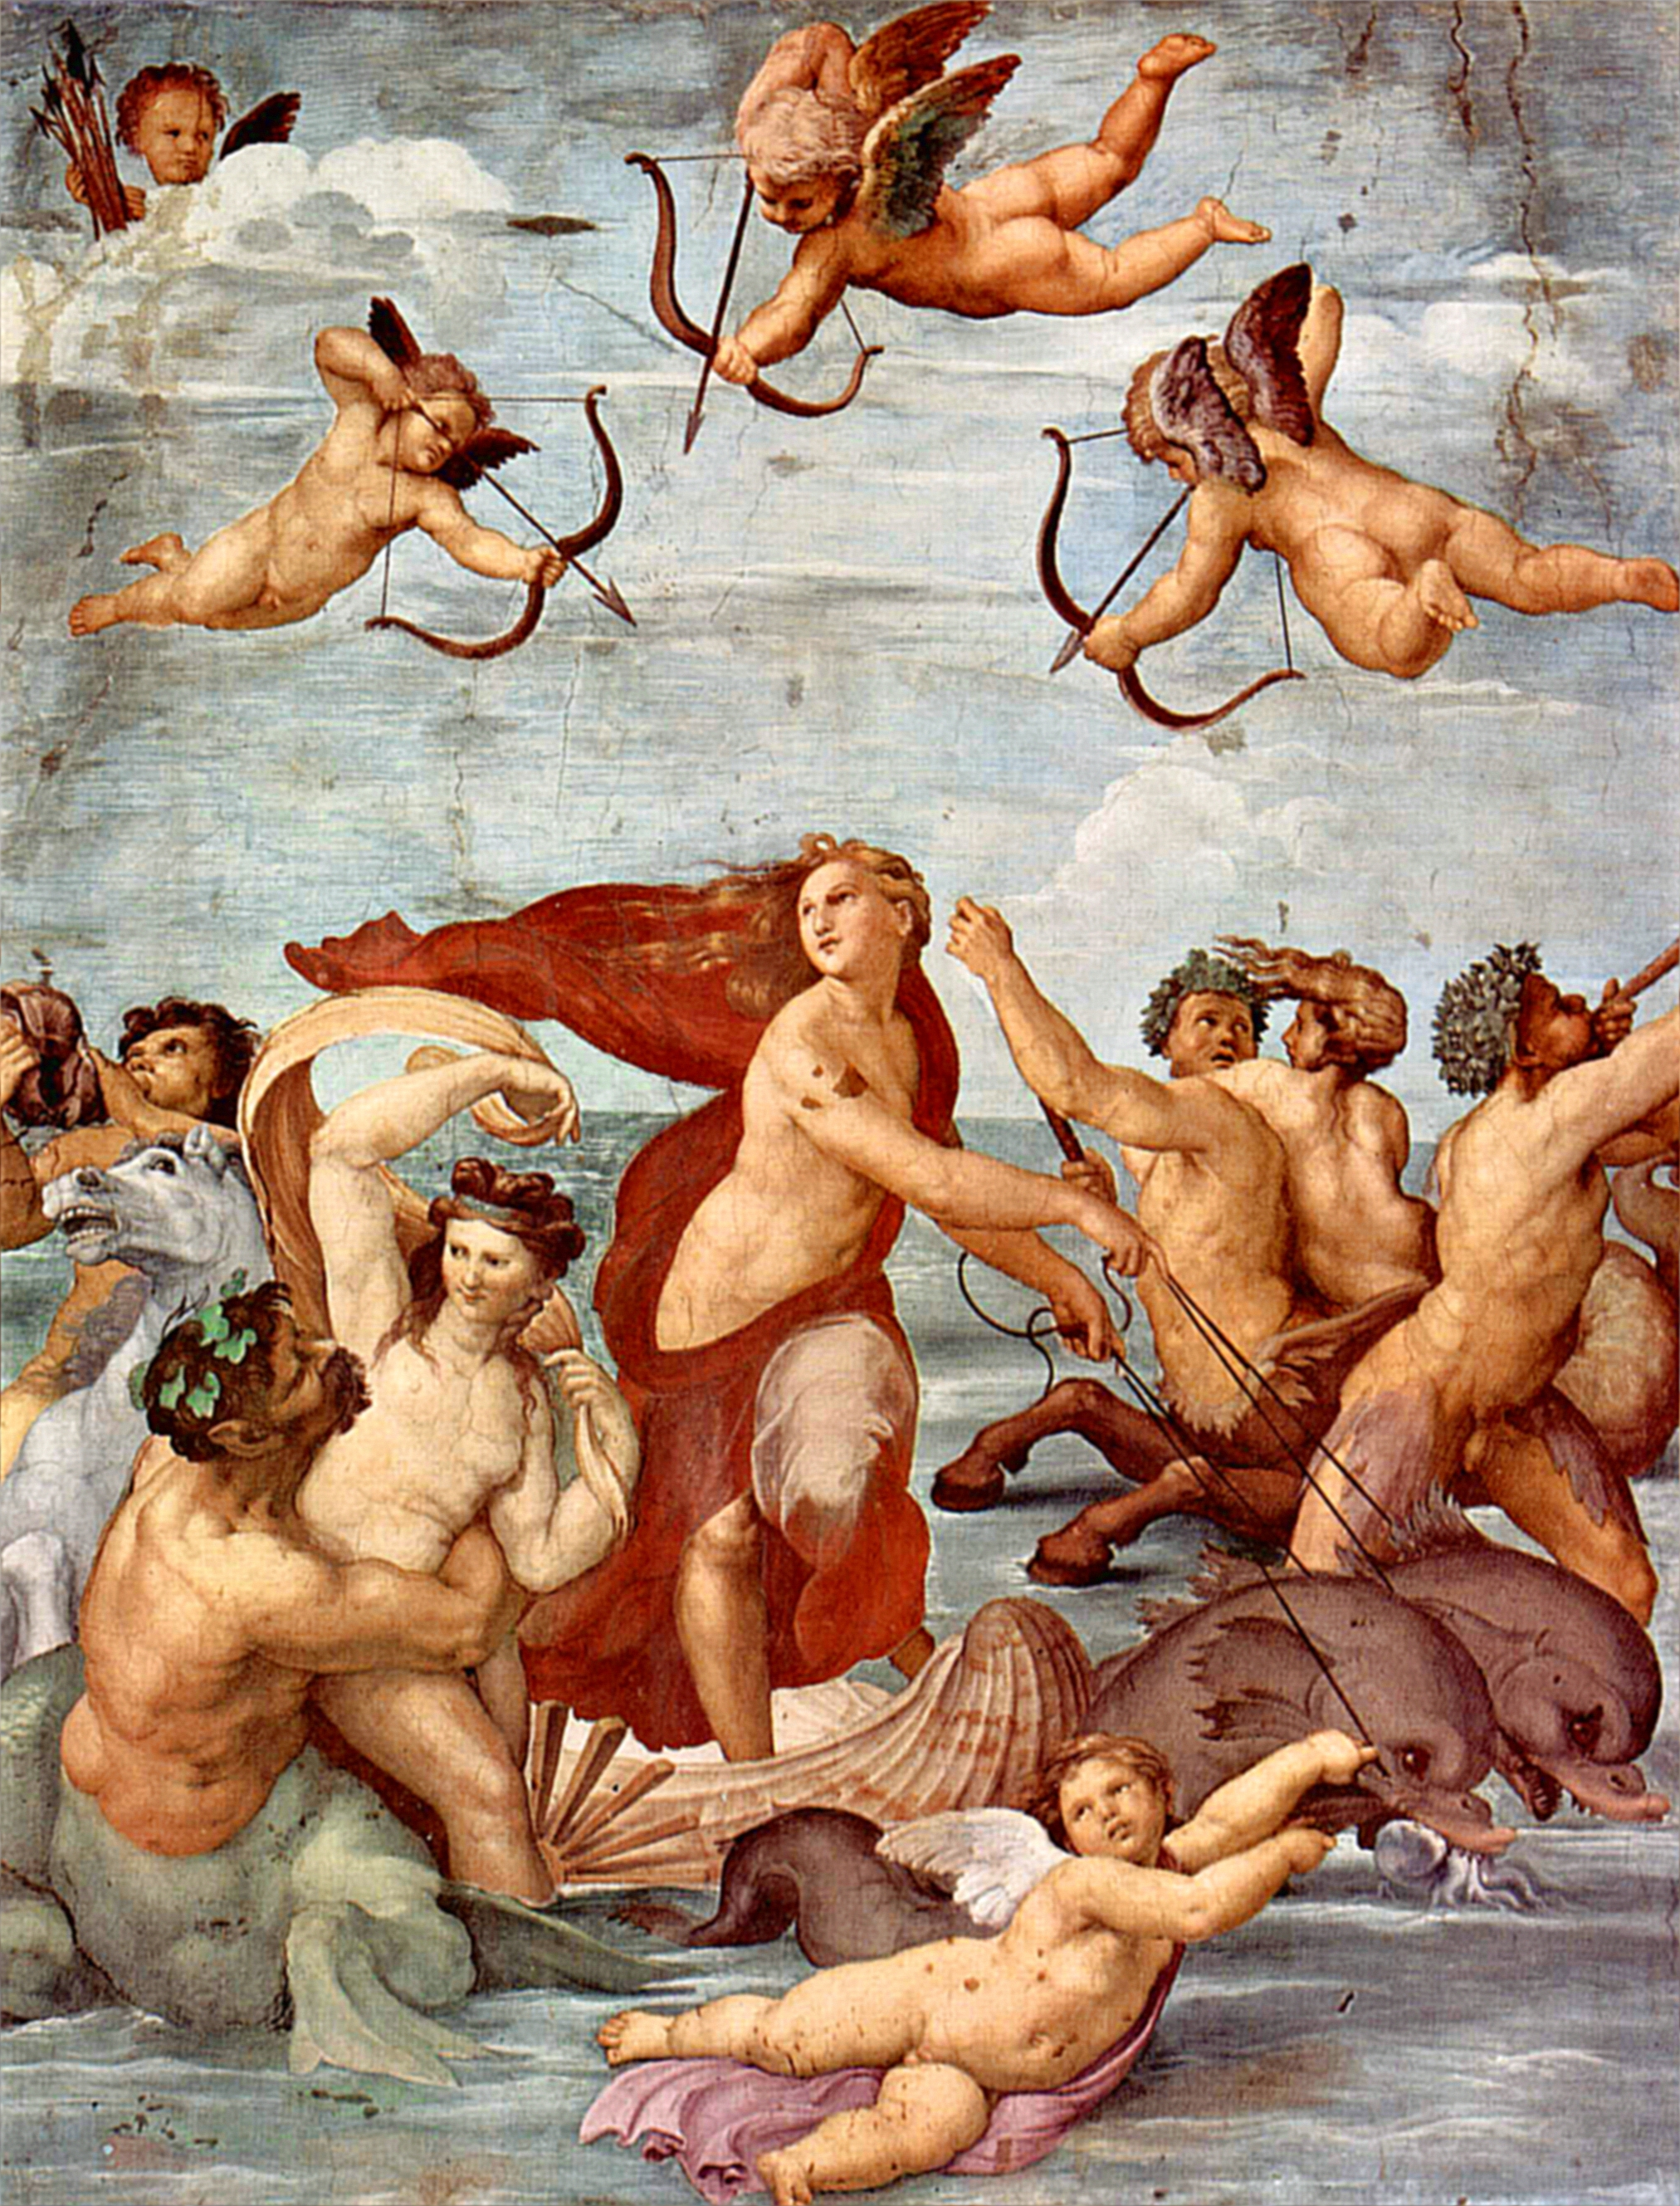 Название самых знаменитых картин. Триумф Галатеи Рафаэль. Рафаэль Санти Триумф Галатеи. Рафаэль. Триумф Галатеи. Фреска виллы Фарнезина (Рим). Рафаэль Санти «Триумф Галатеи», 1512.